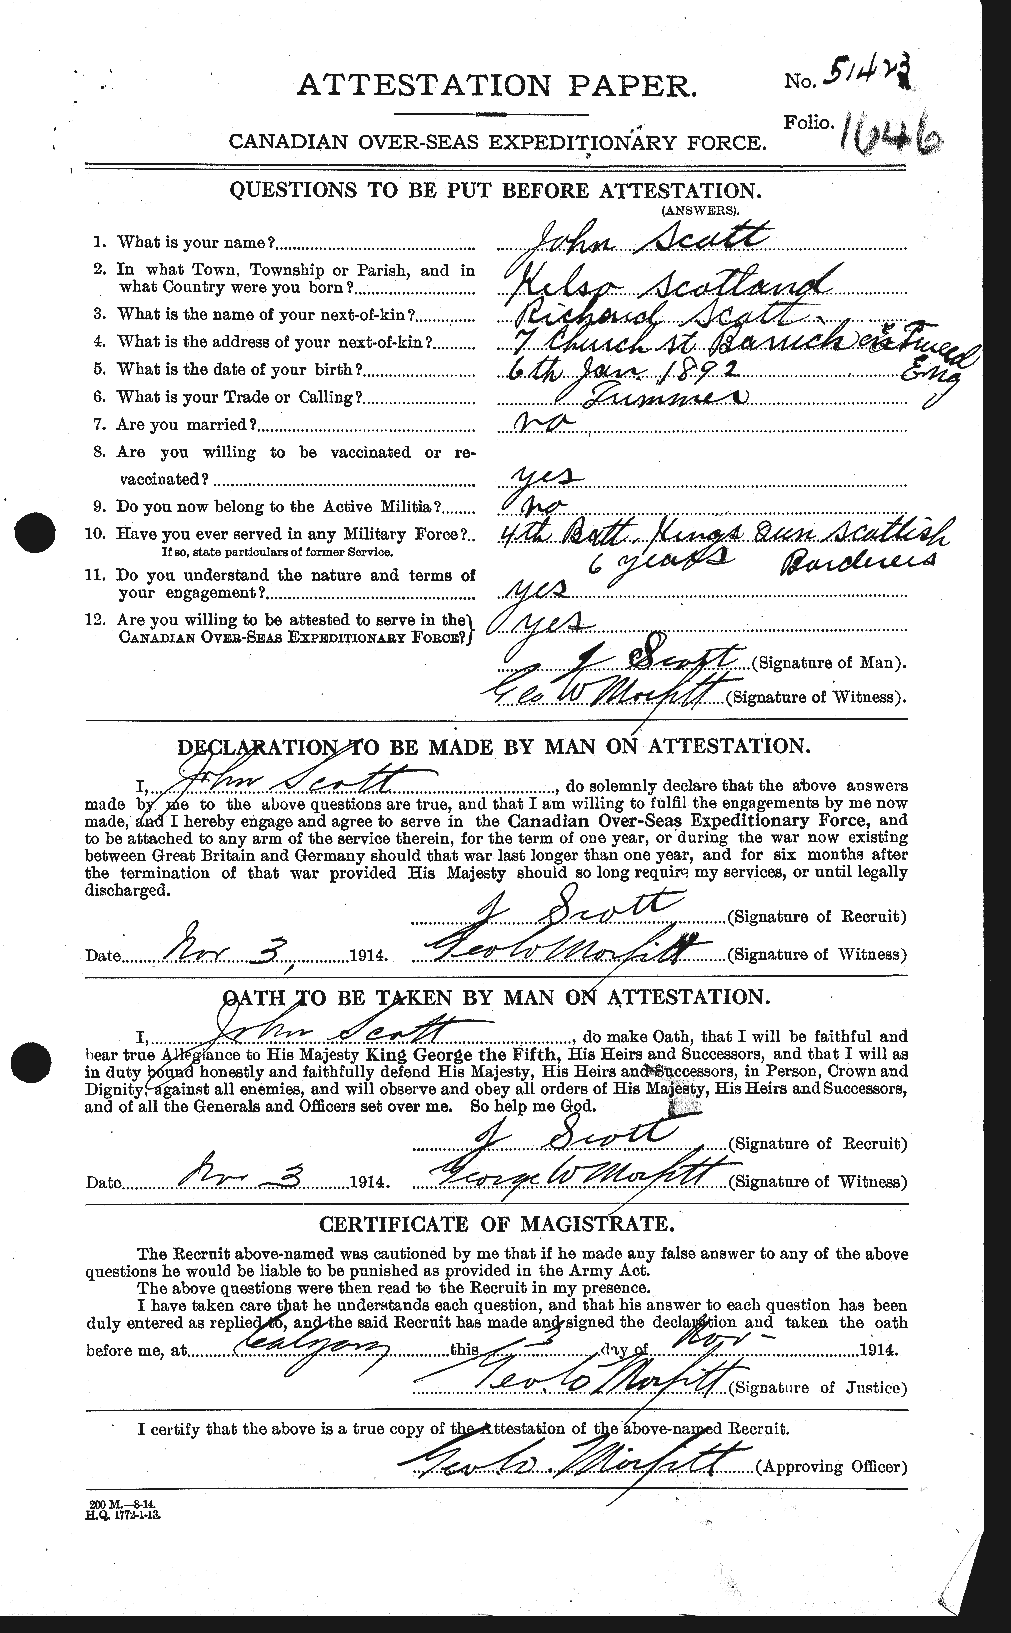 Dossiers du Personnel de la Première Guerre mondiale - CEC 084897a